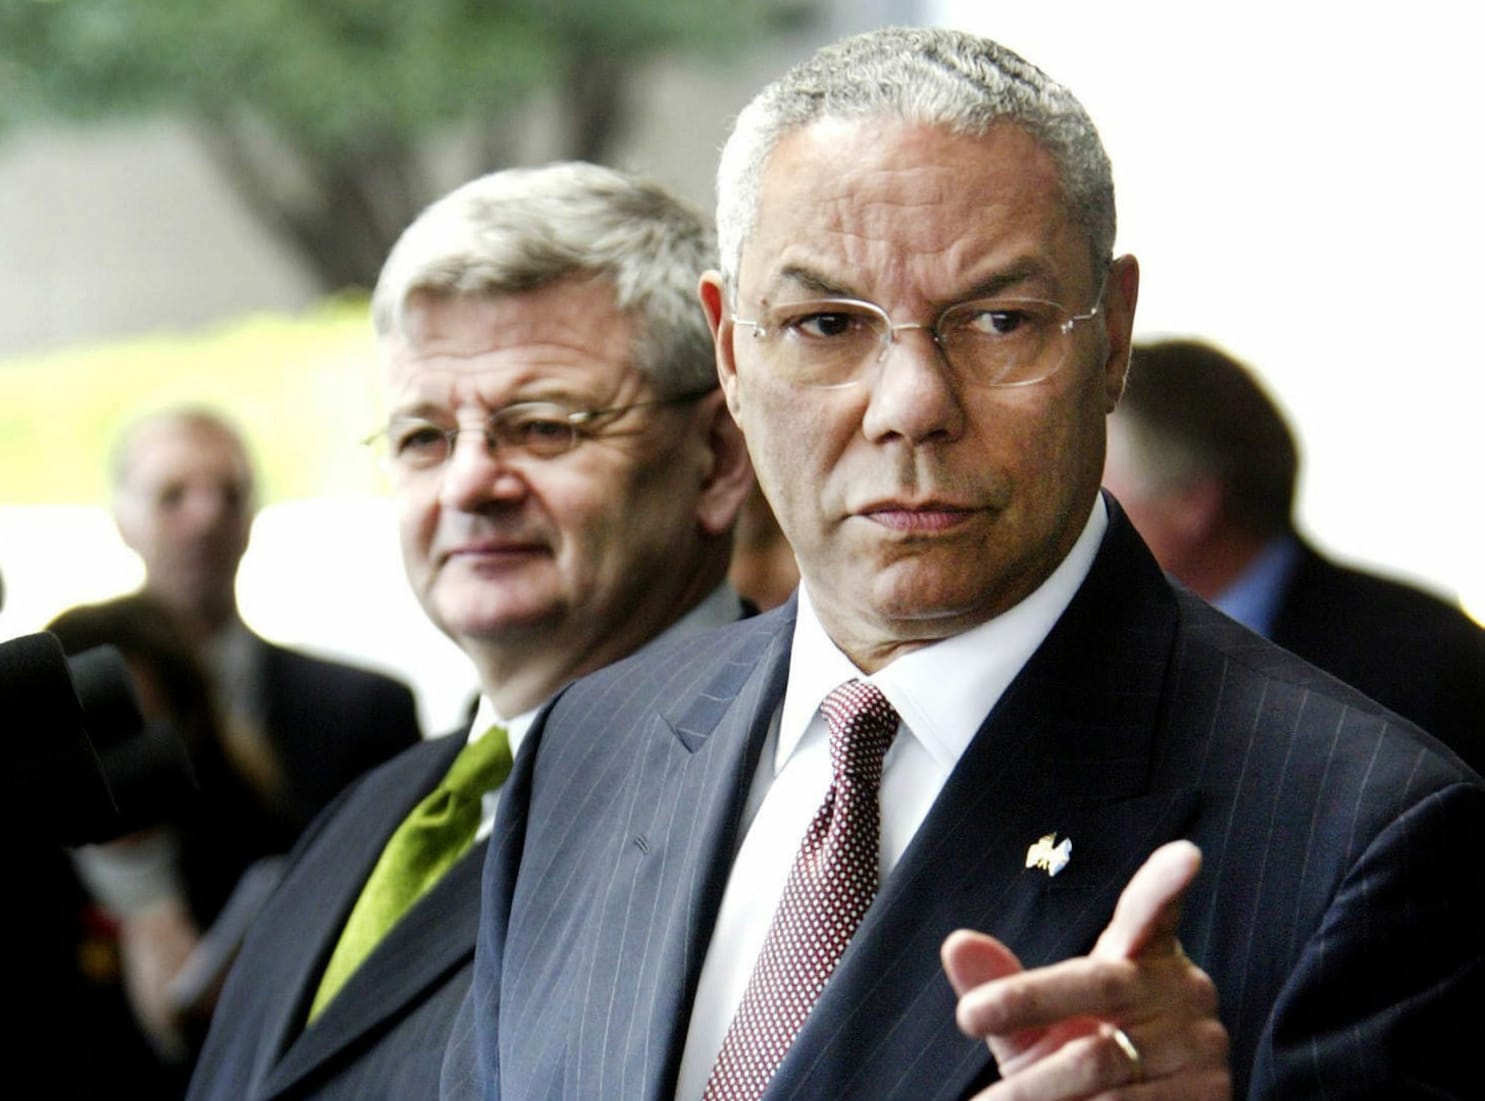 In der berüchtigten Sitzung des Sicherheitsrates geriet Powell aneinander mit seinem deutschen Amtskollegen Joschka Fischer (l.). Mit stockender Stimme entgegnete Fischer nach dem Vortrag Powells mehrmals: "Ich bin nicht überzeugt."